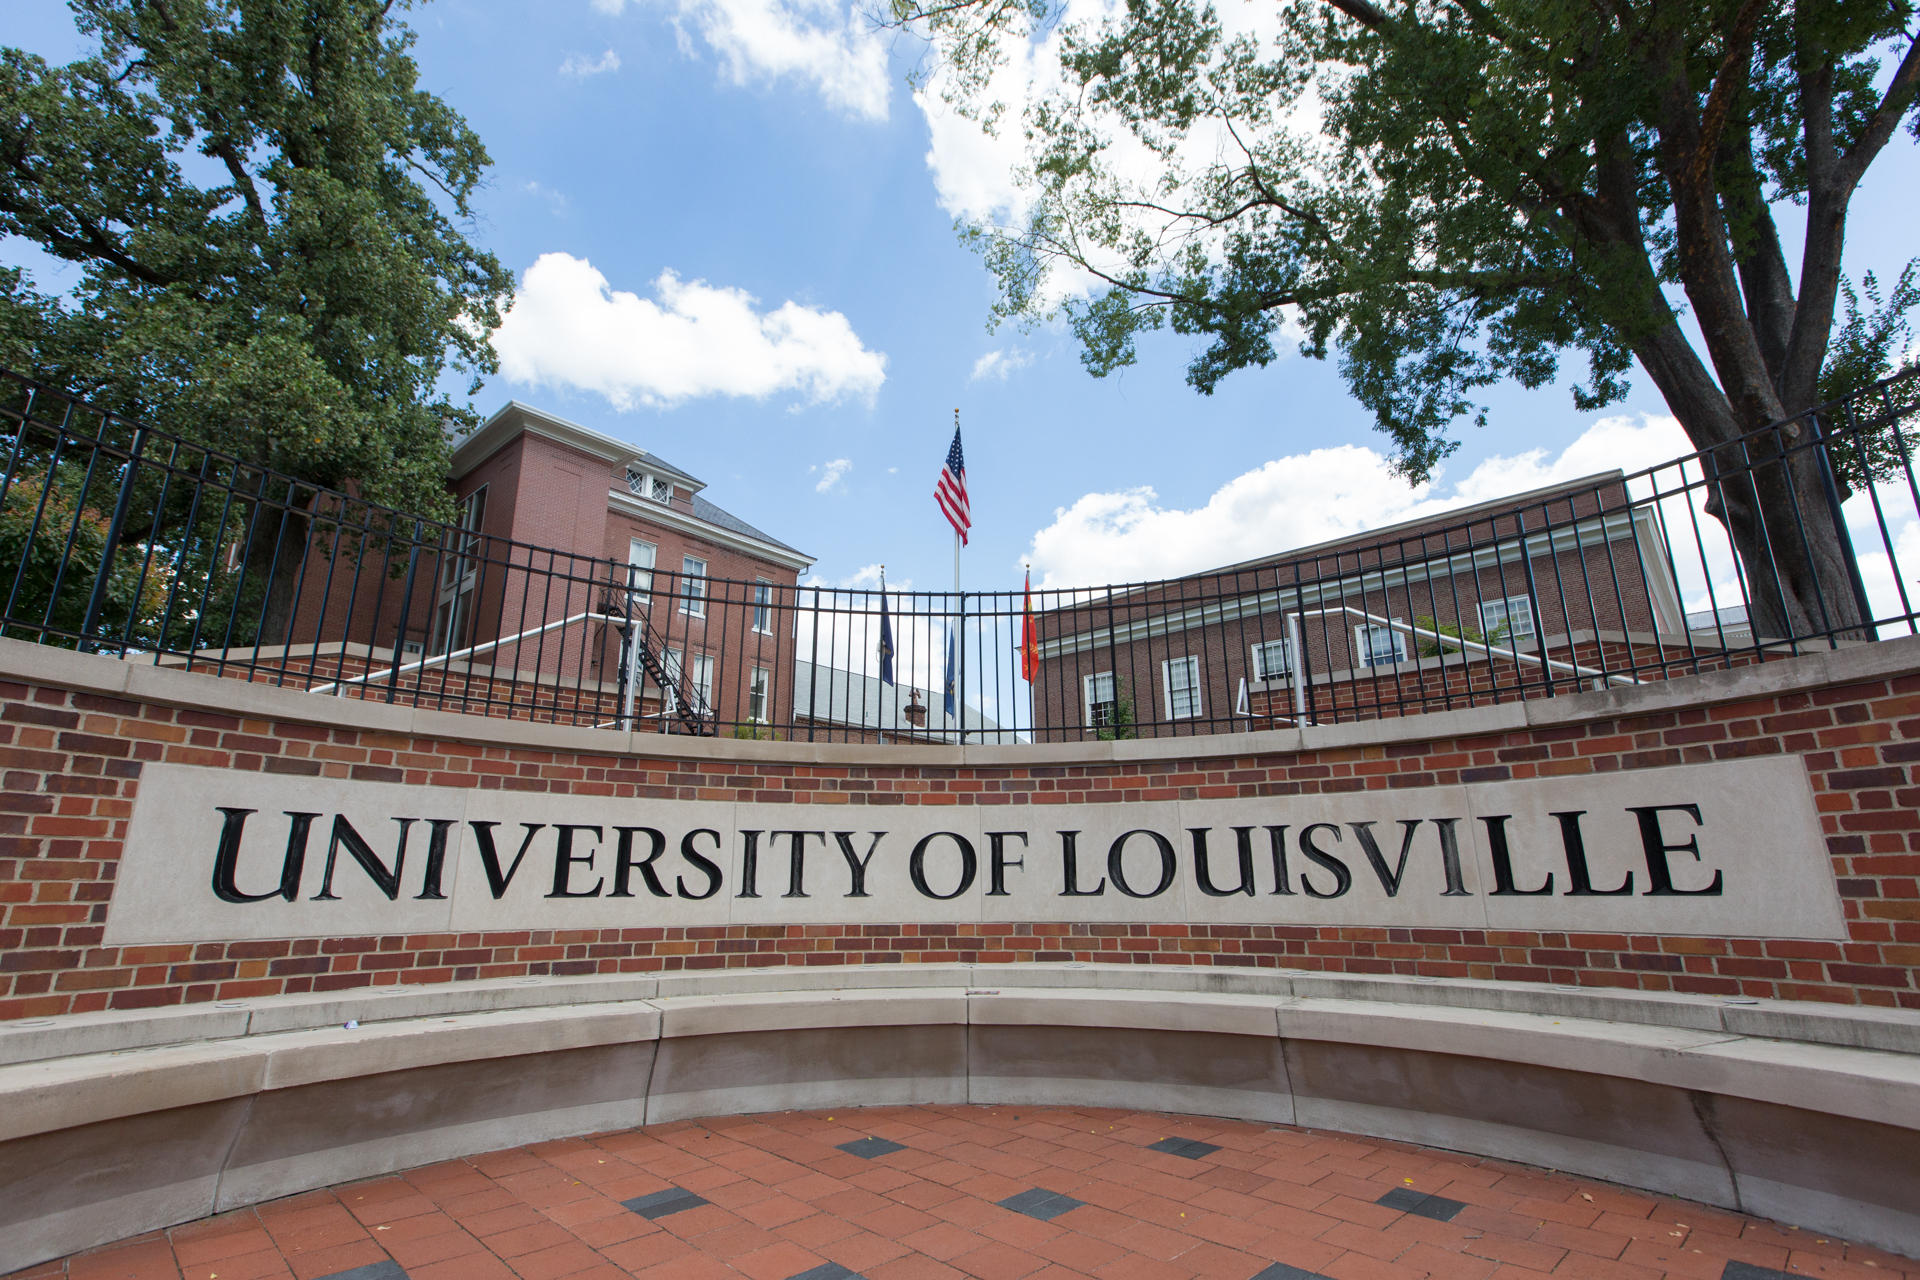 University of Louisville LOUISVILLE, KY